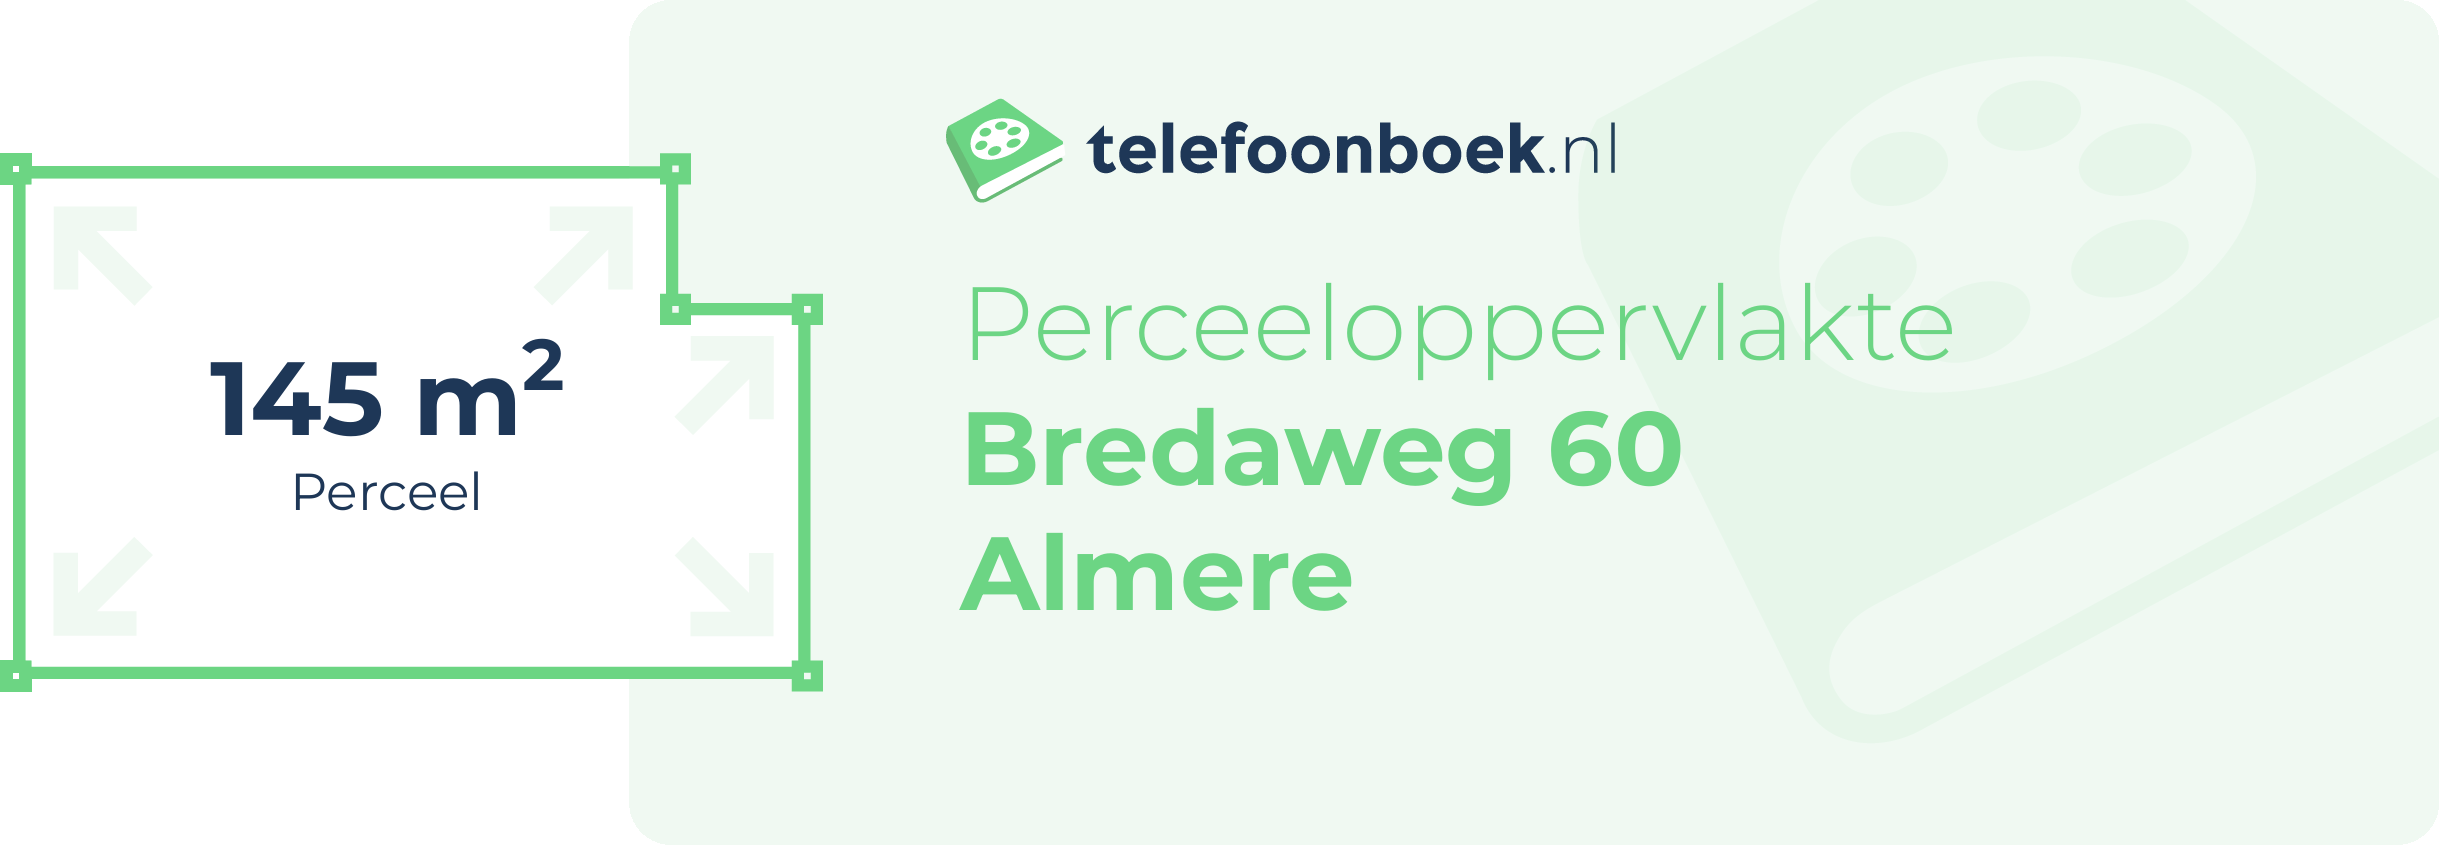 Perceeloppervlakte Bredaweg 60 Almere